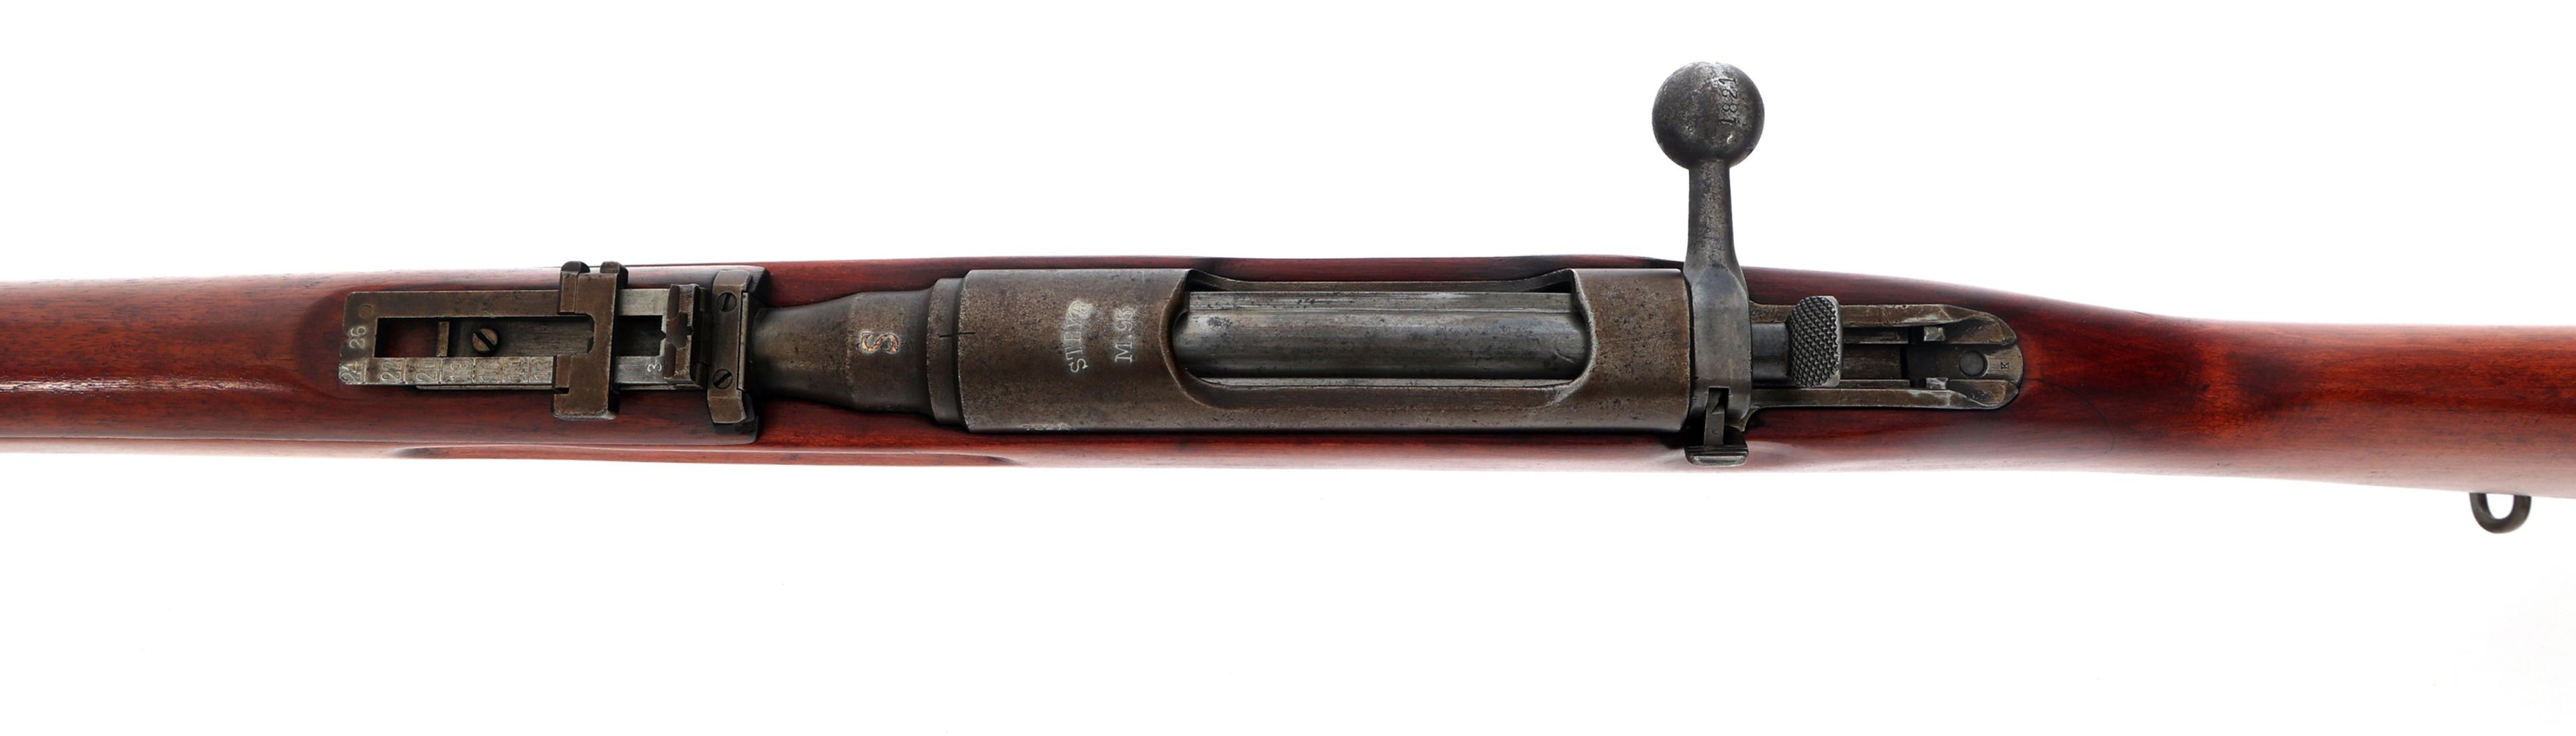 AUSTRIAN STEYR MODEL 1895/30 8x56mmR CALIBER RIFLE